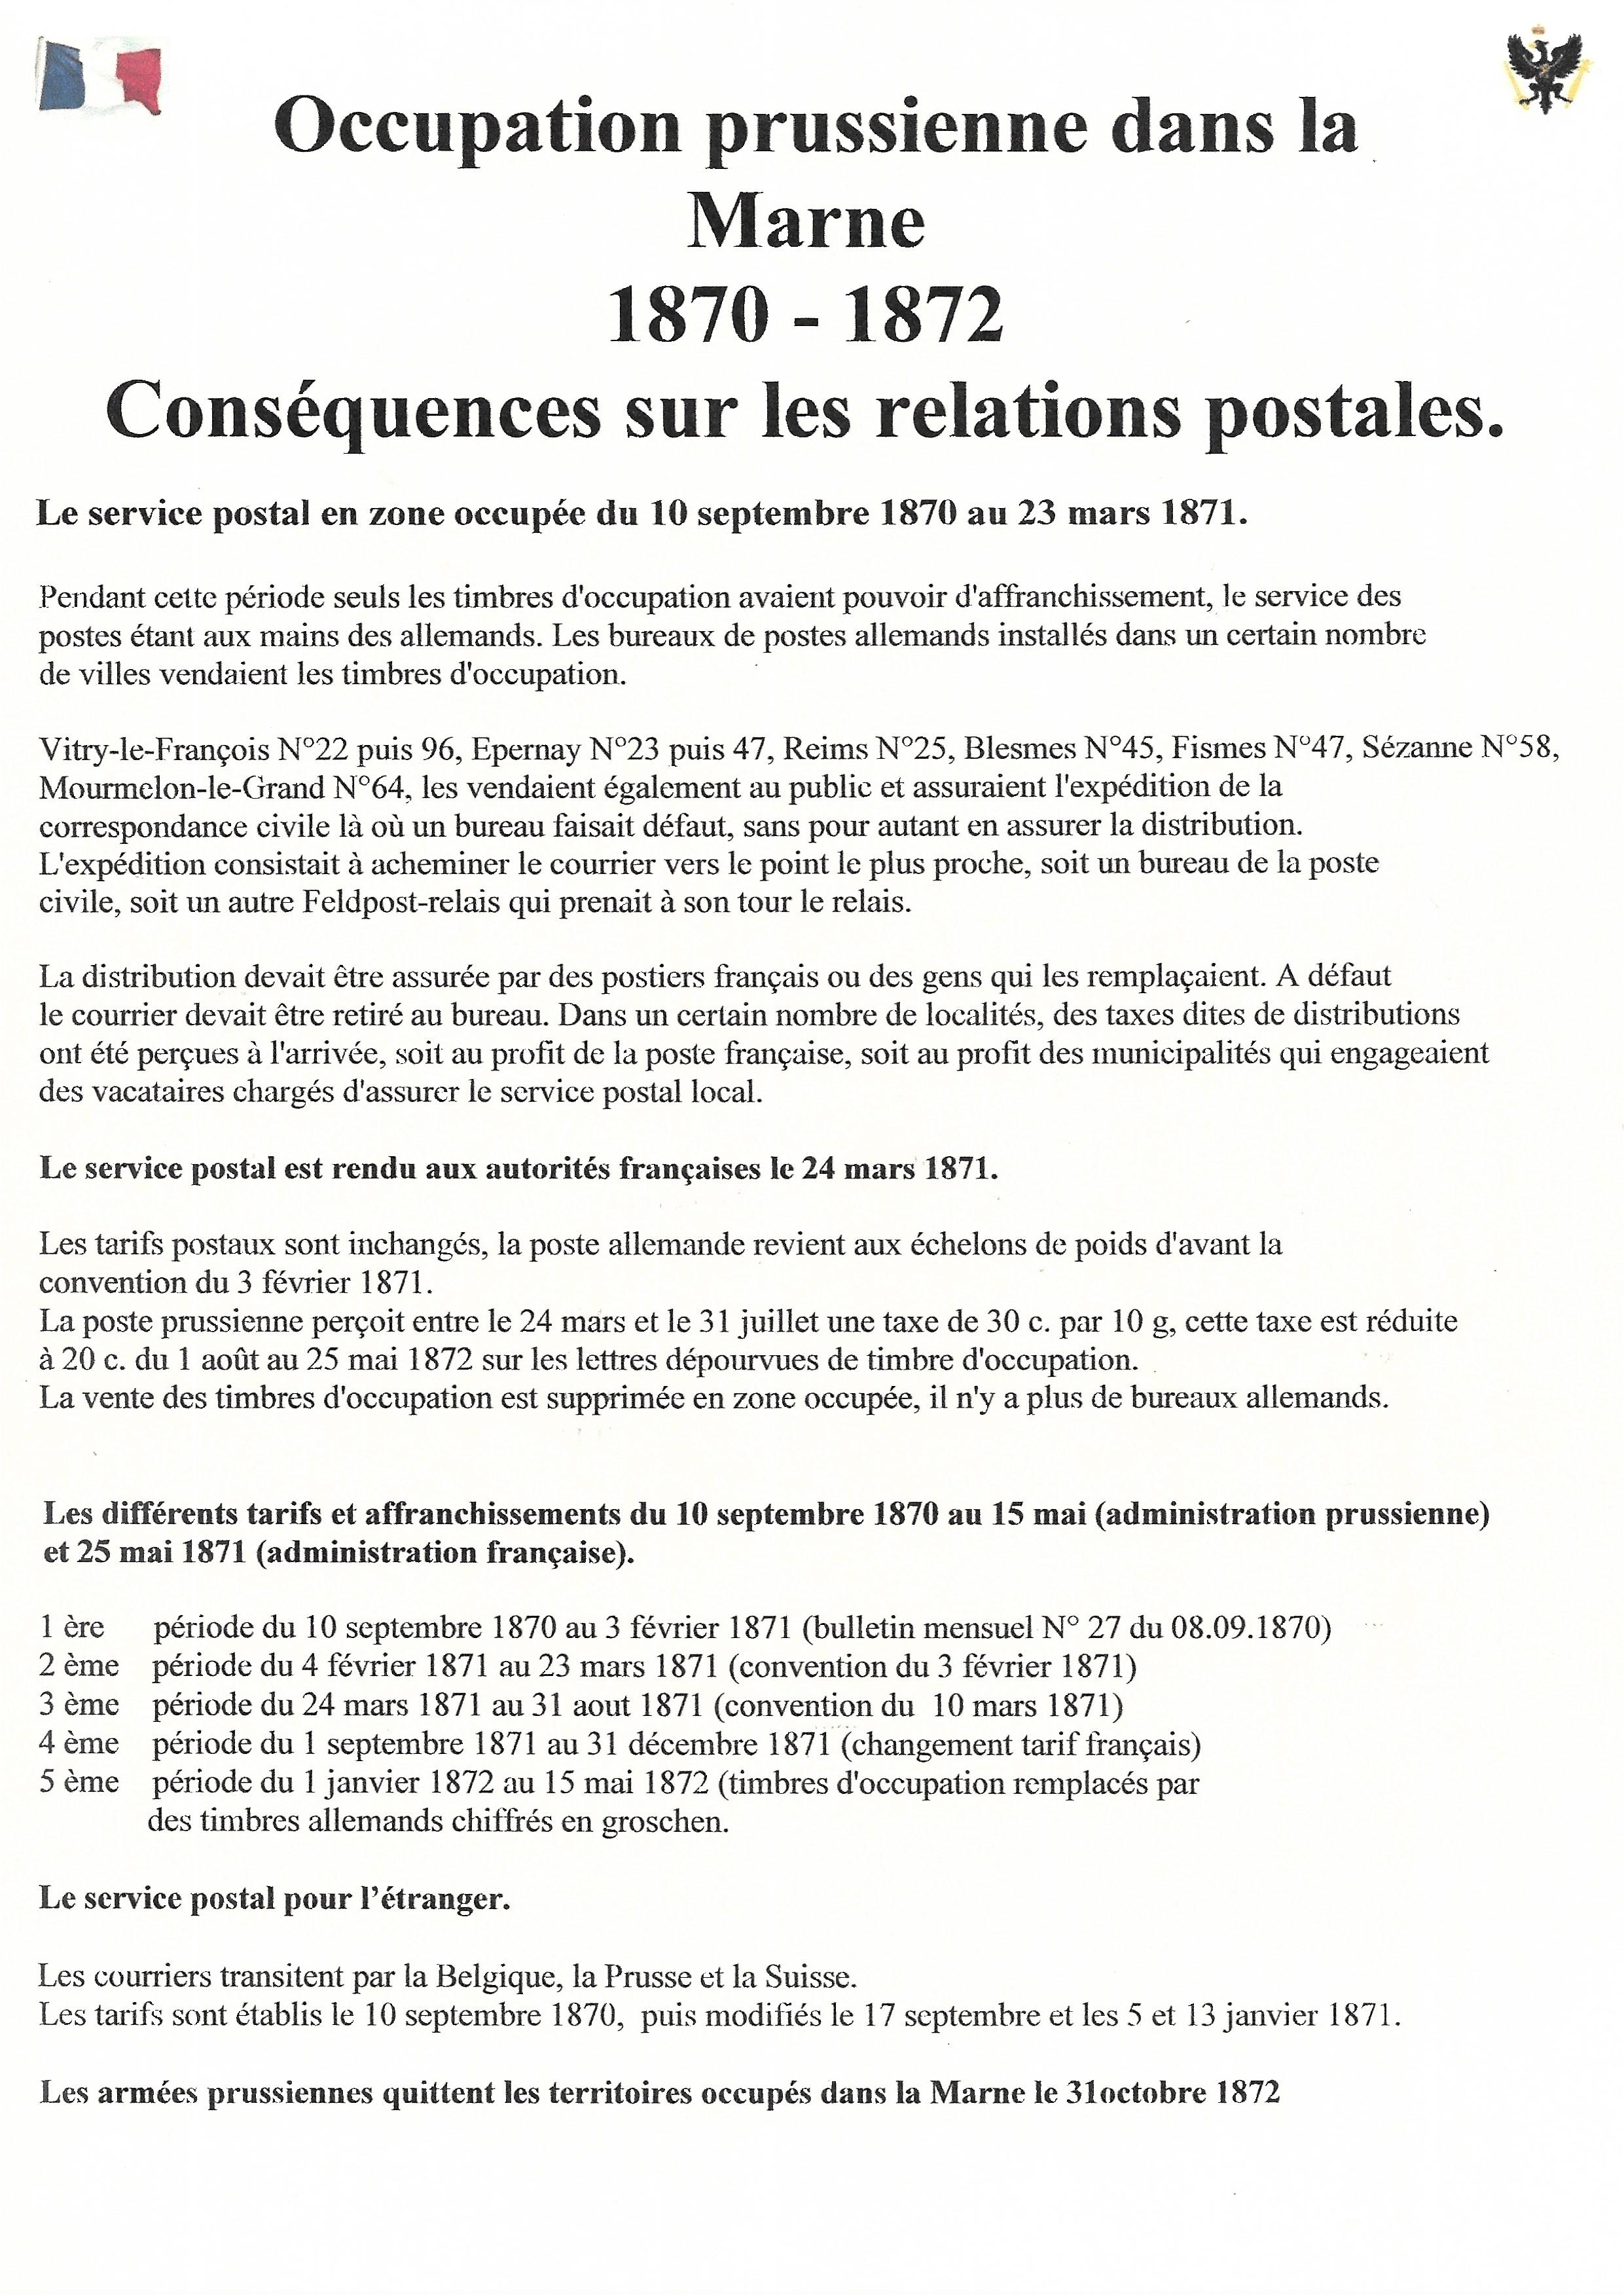 Occupation Prussienne dans la Marne 1870-1872 : Cons��quences sur les relations postales p. 1